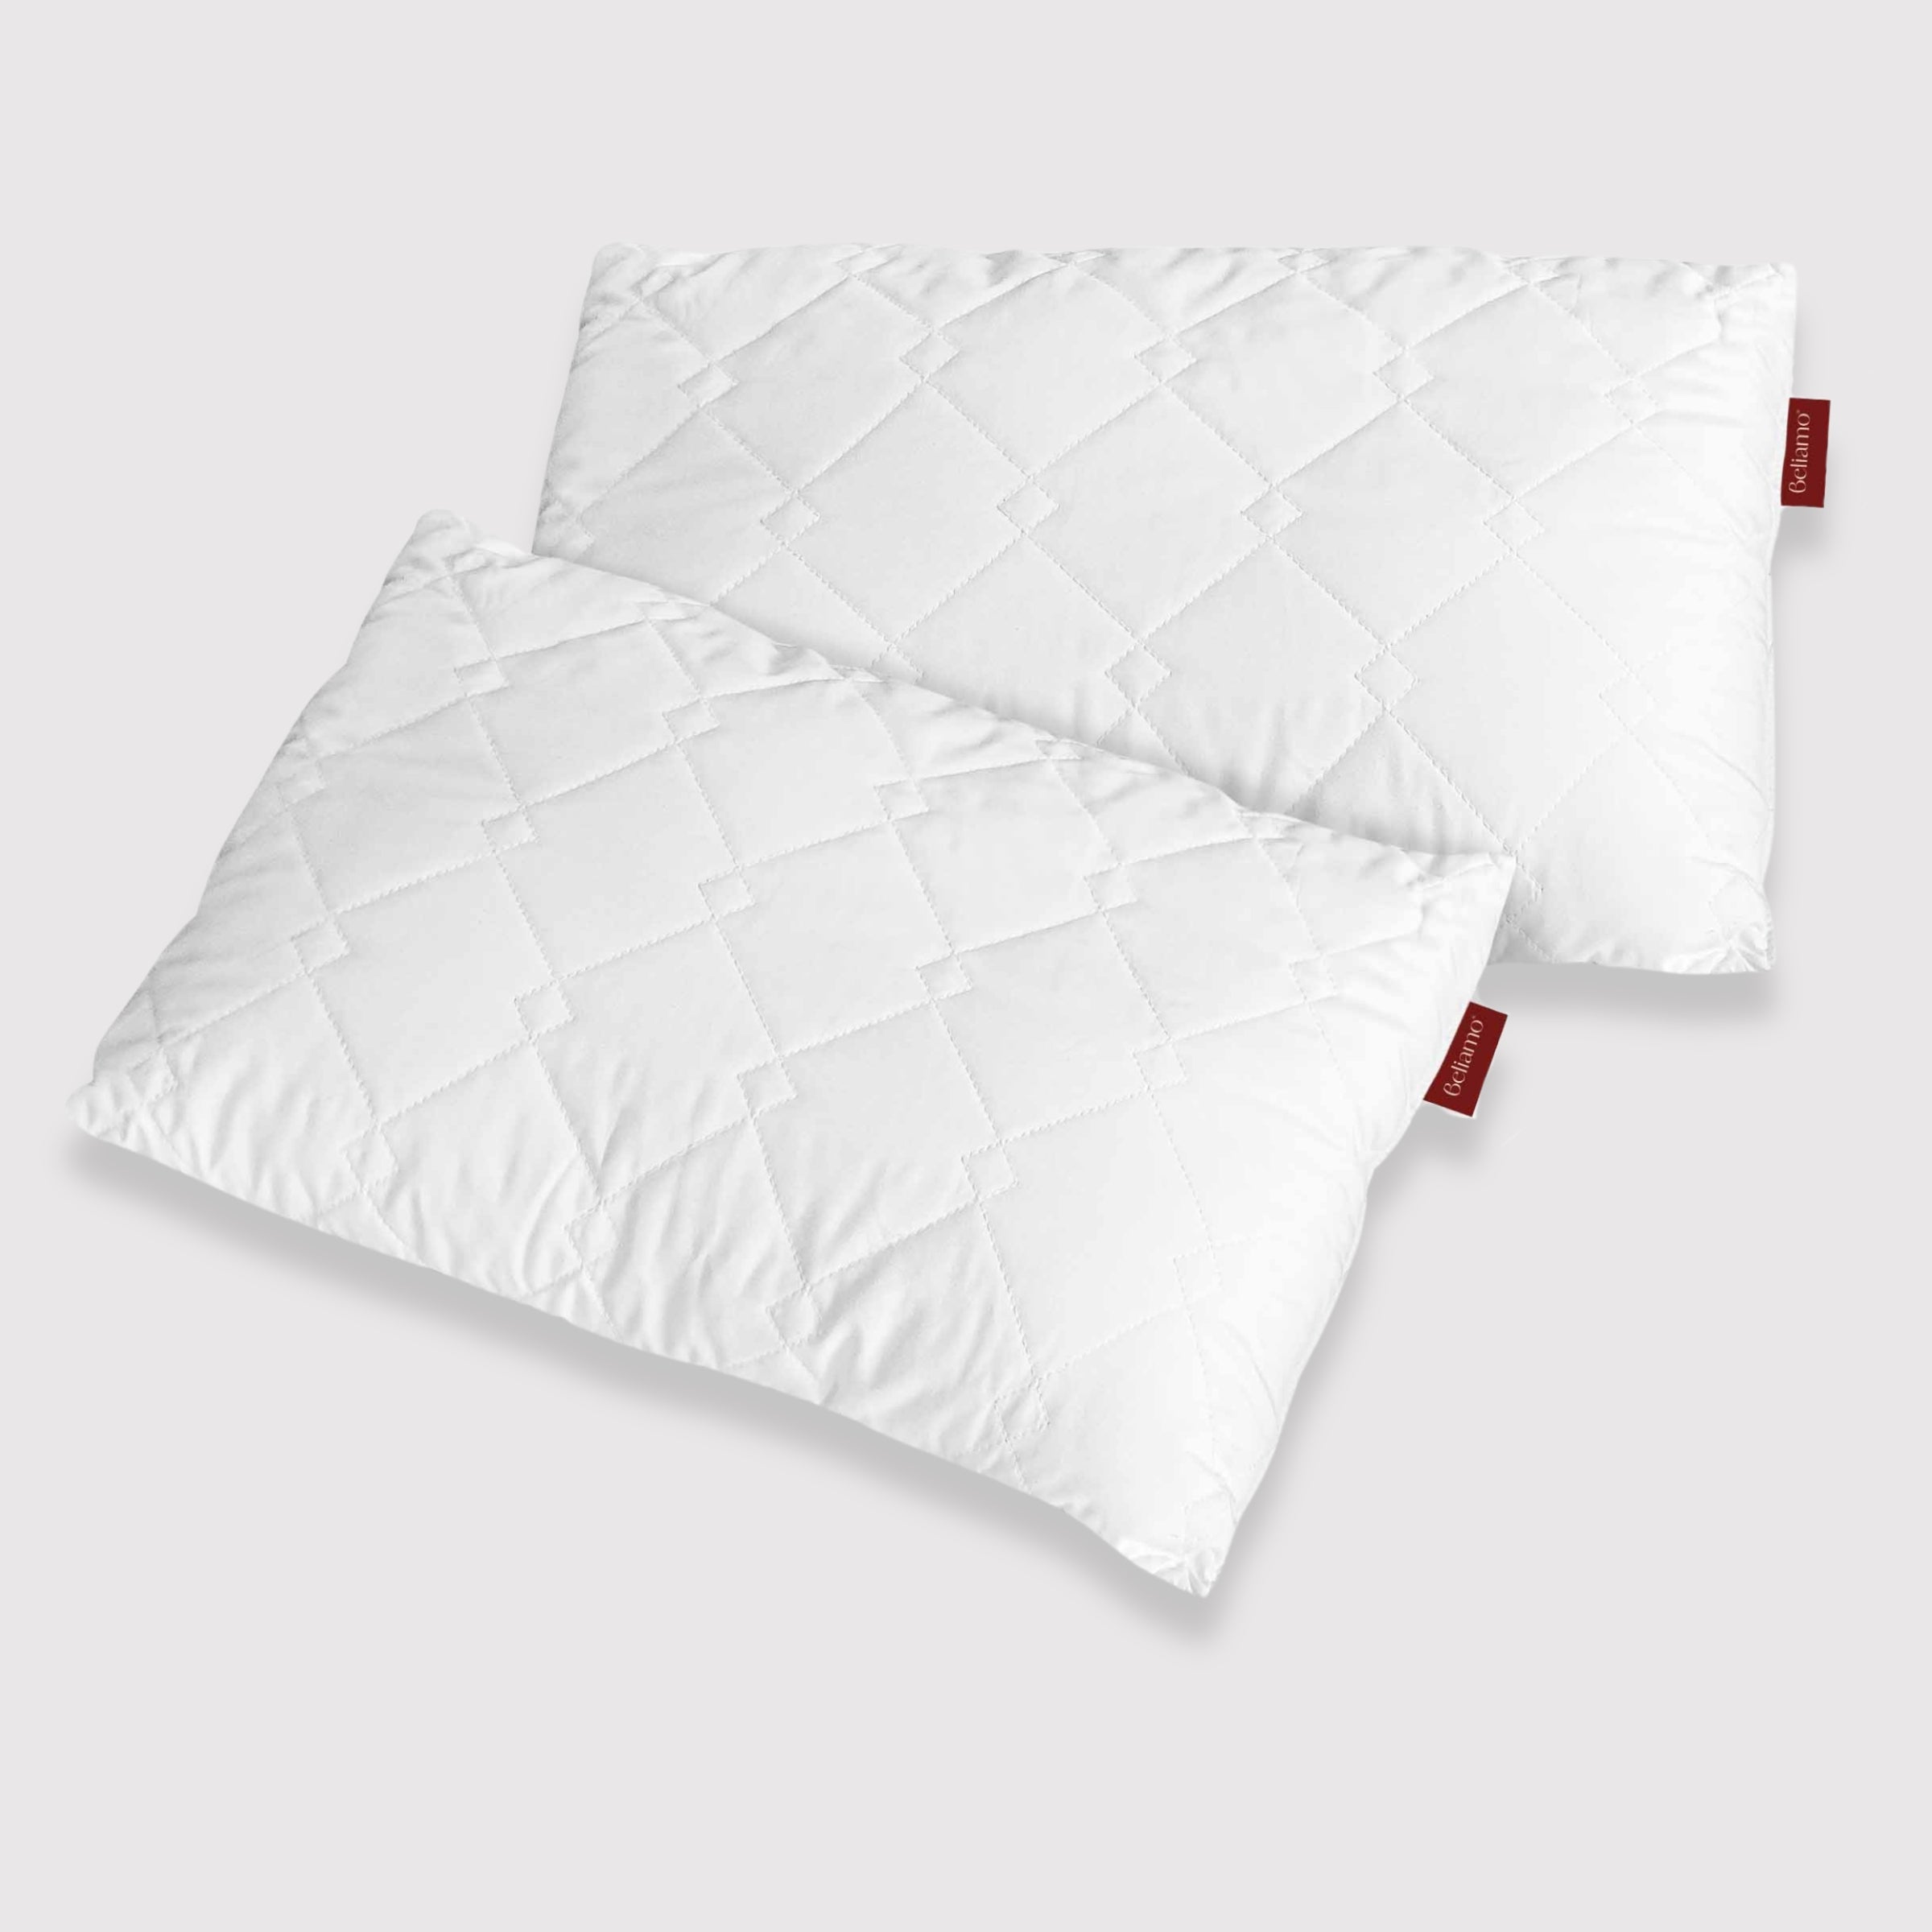 Due cuscini Siena in fiocco di memory foam di Beliamo, pensati per offrire un comfort superiore e un supporto ottimale